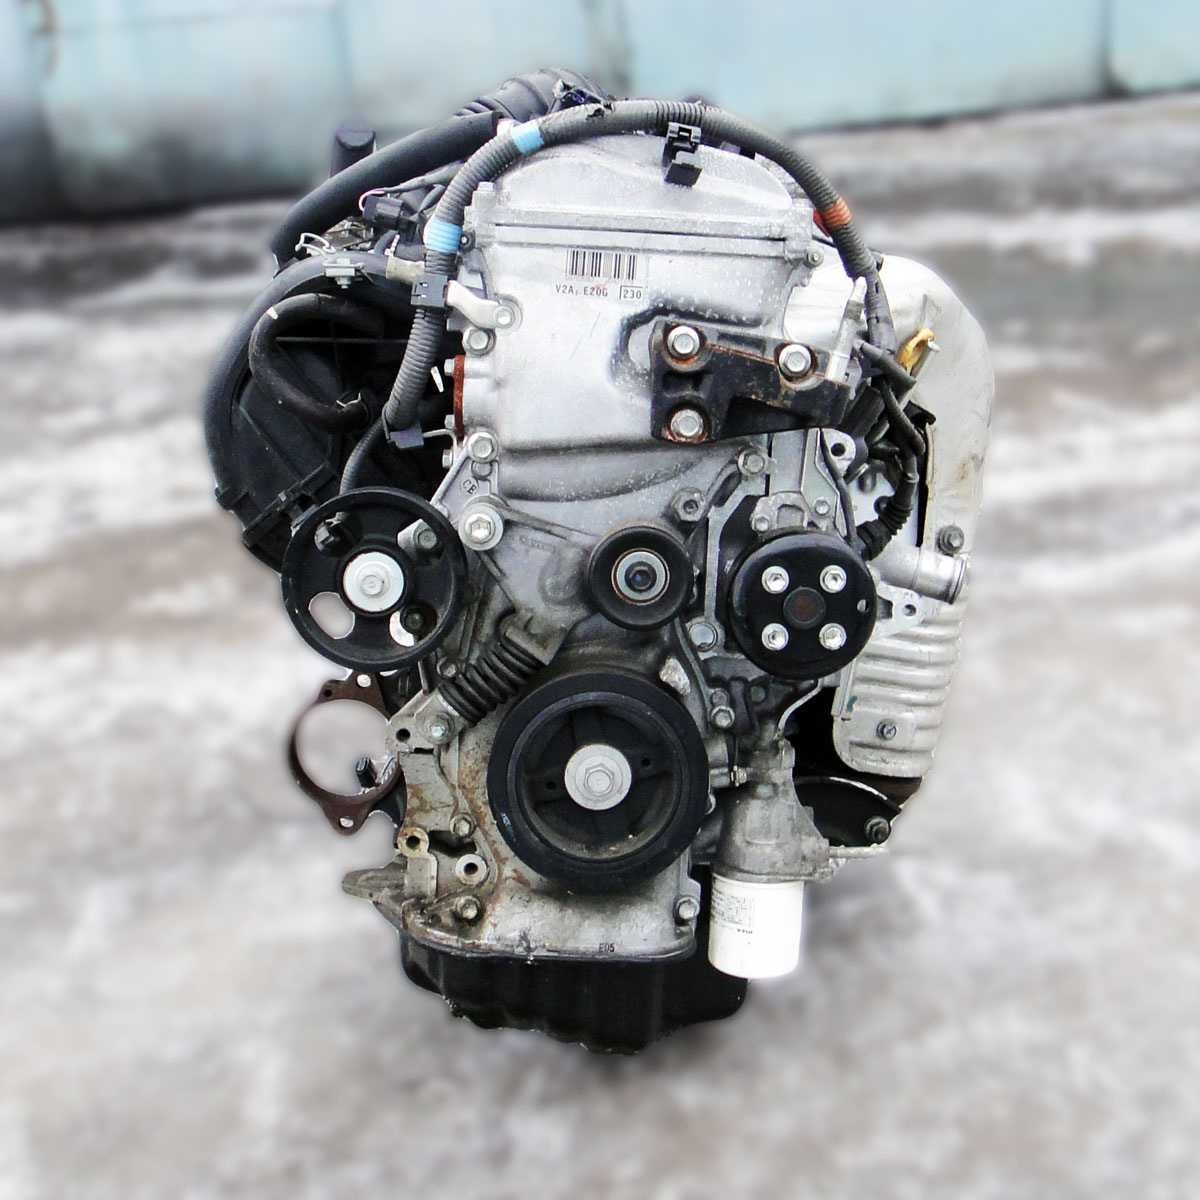 Двигатель двс Мотор 2AZ — fe Двигатель toyota(тойота) 2.4